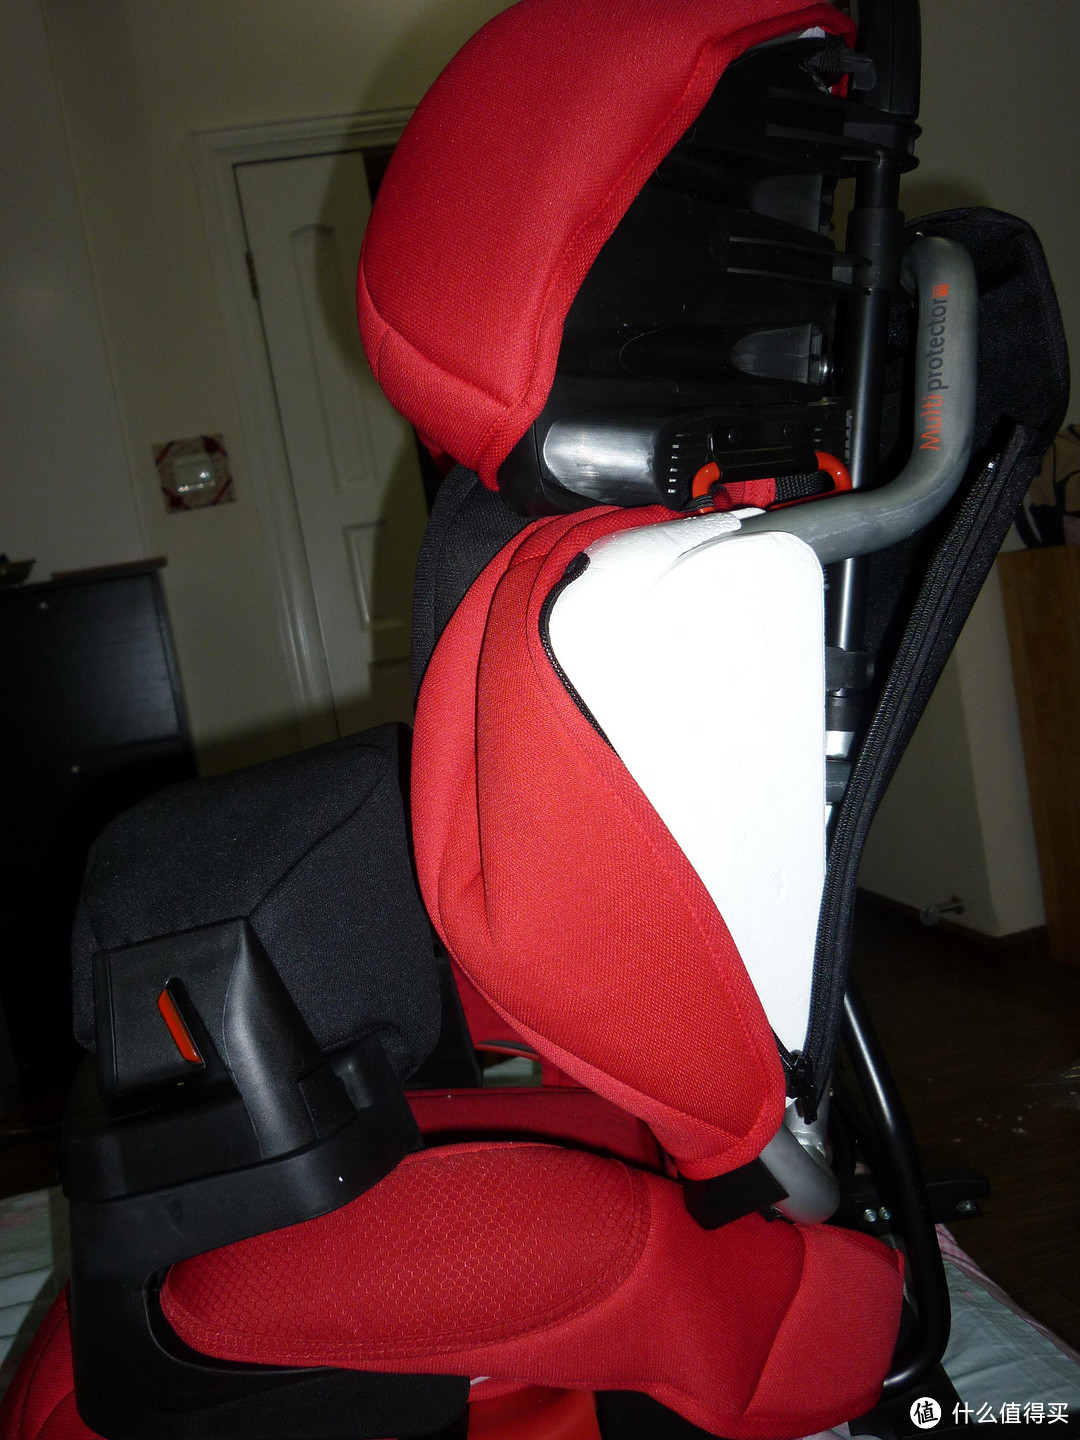 懒人第一单：casualplay 佳备 Multi Protector fix 皇家骑士 儿童安全座椅